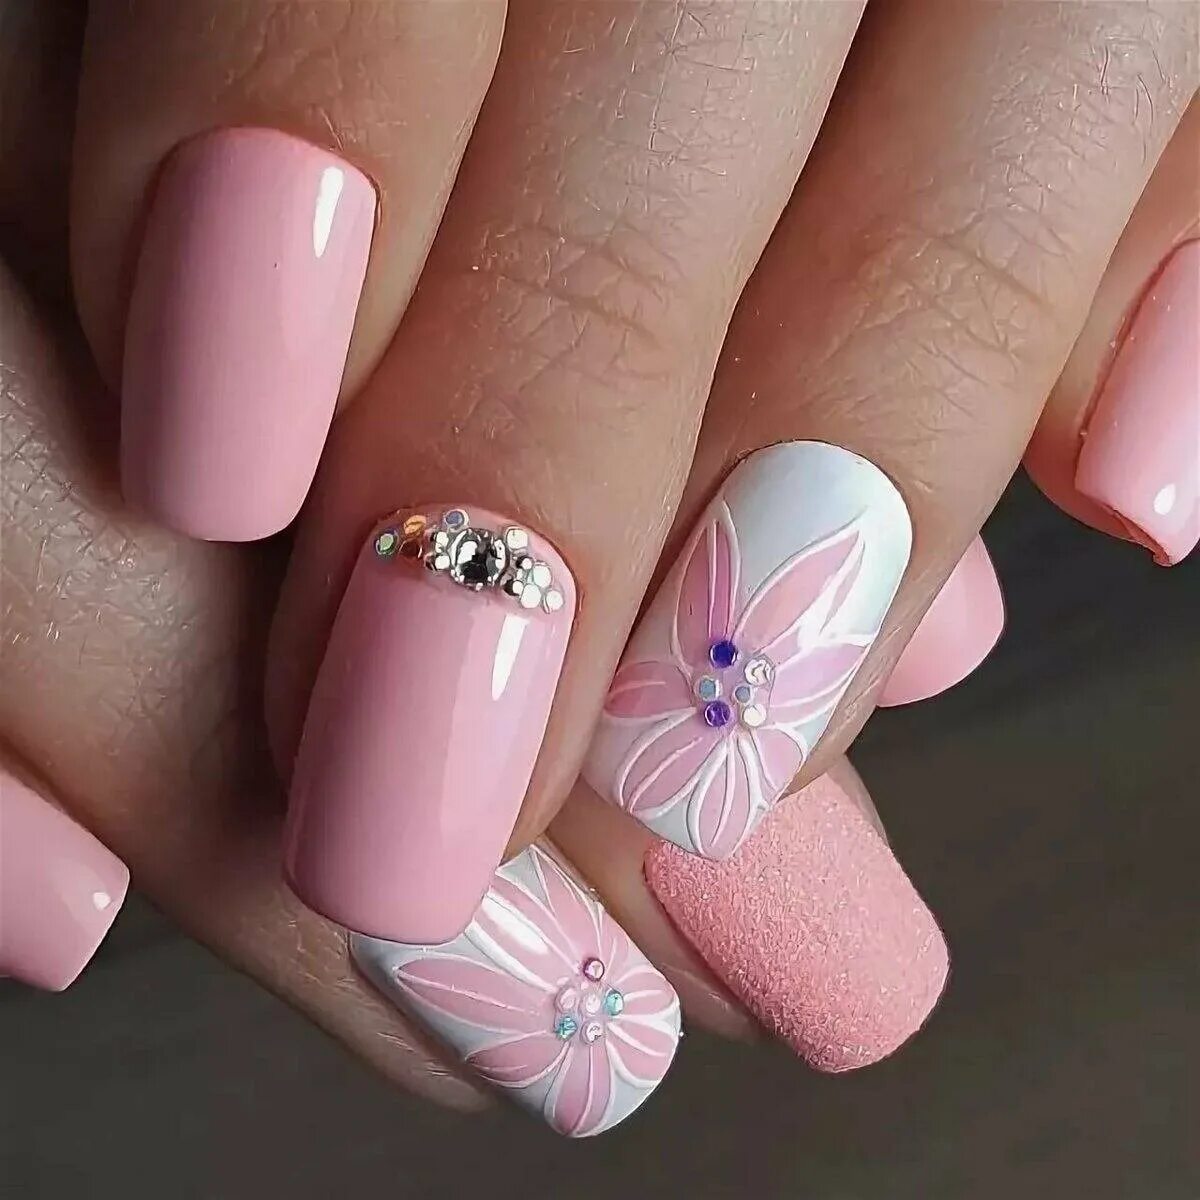 Розовый маникюр. Р̸о̸з̸о̸в̸ы̸й̸ м̸а̸н̸и̸к̸. Красивые ногти. Красивые ногти на лето.